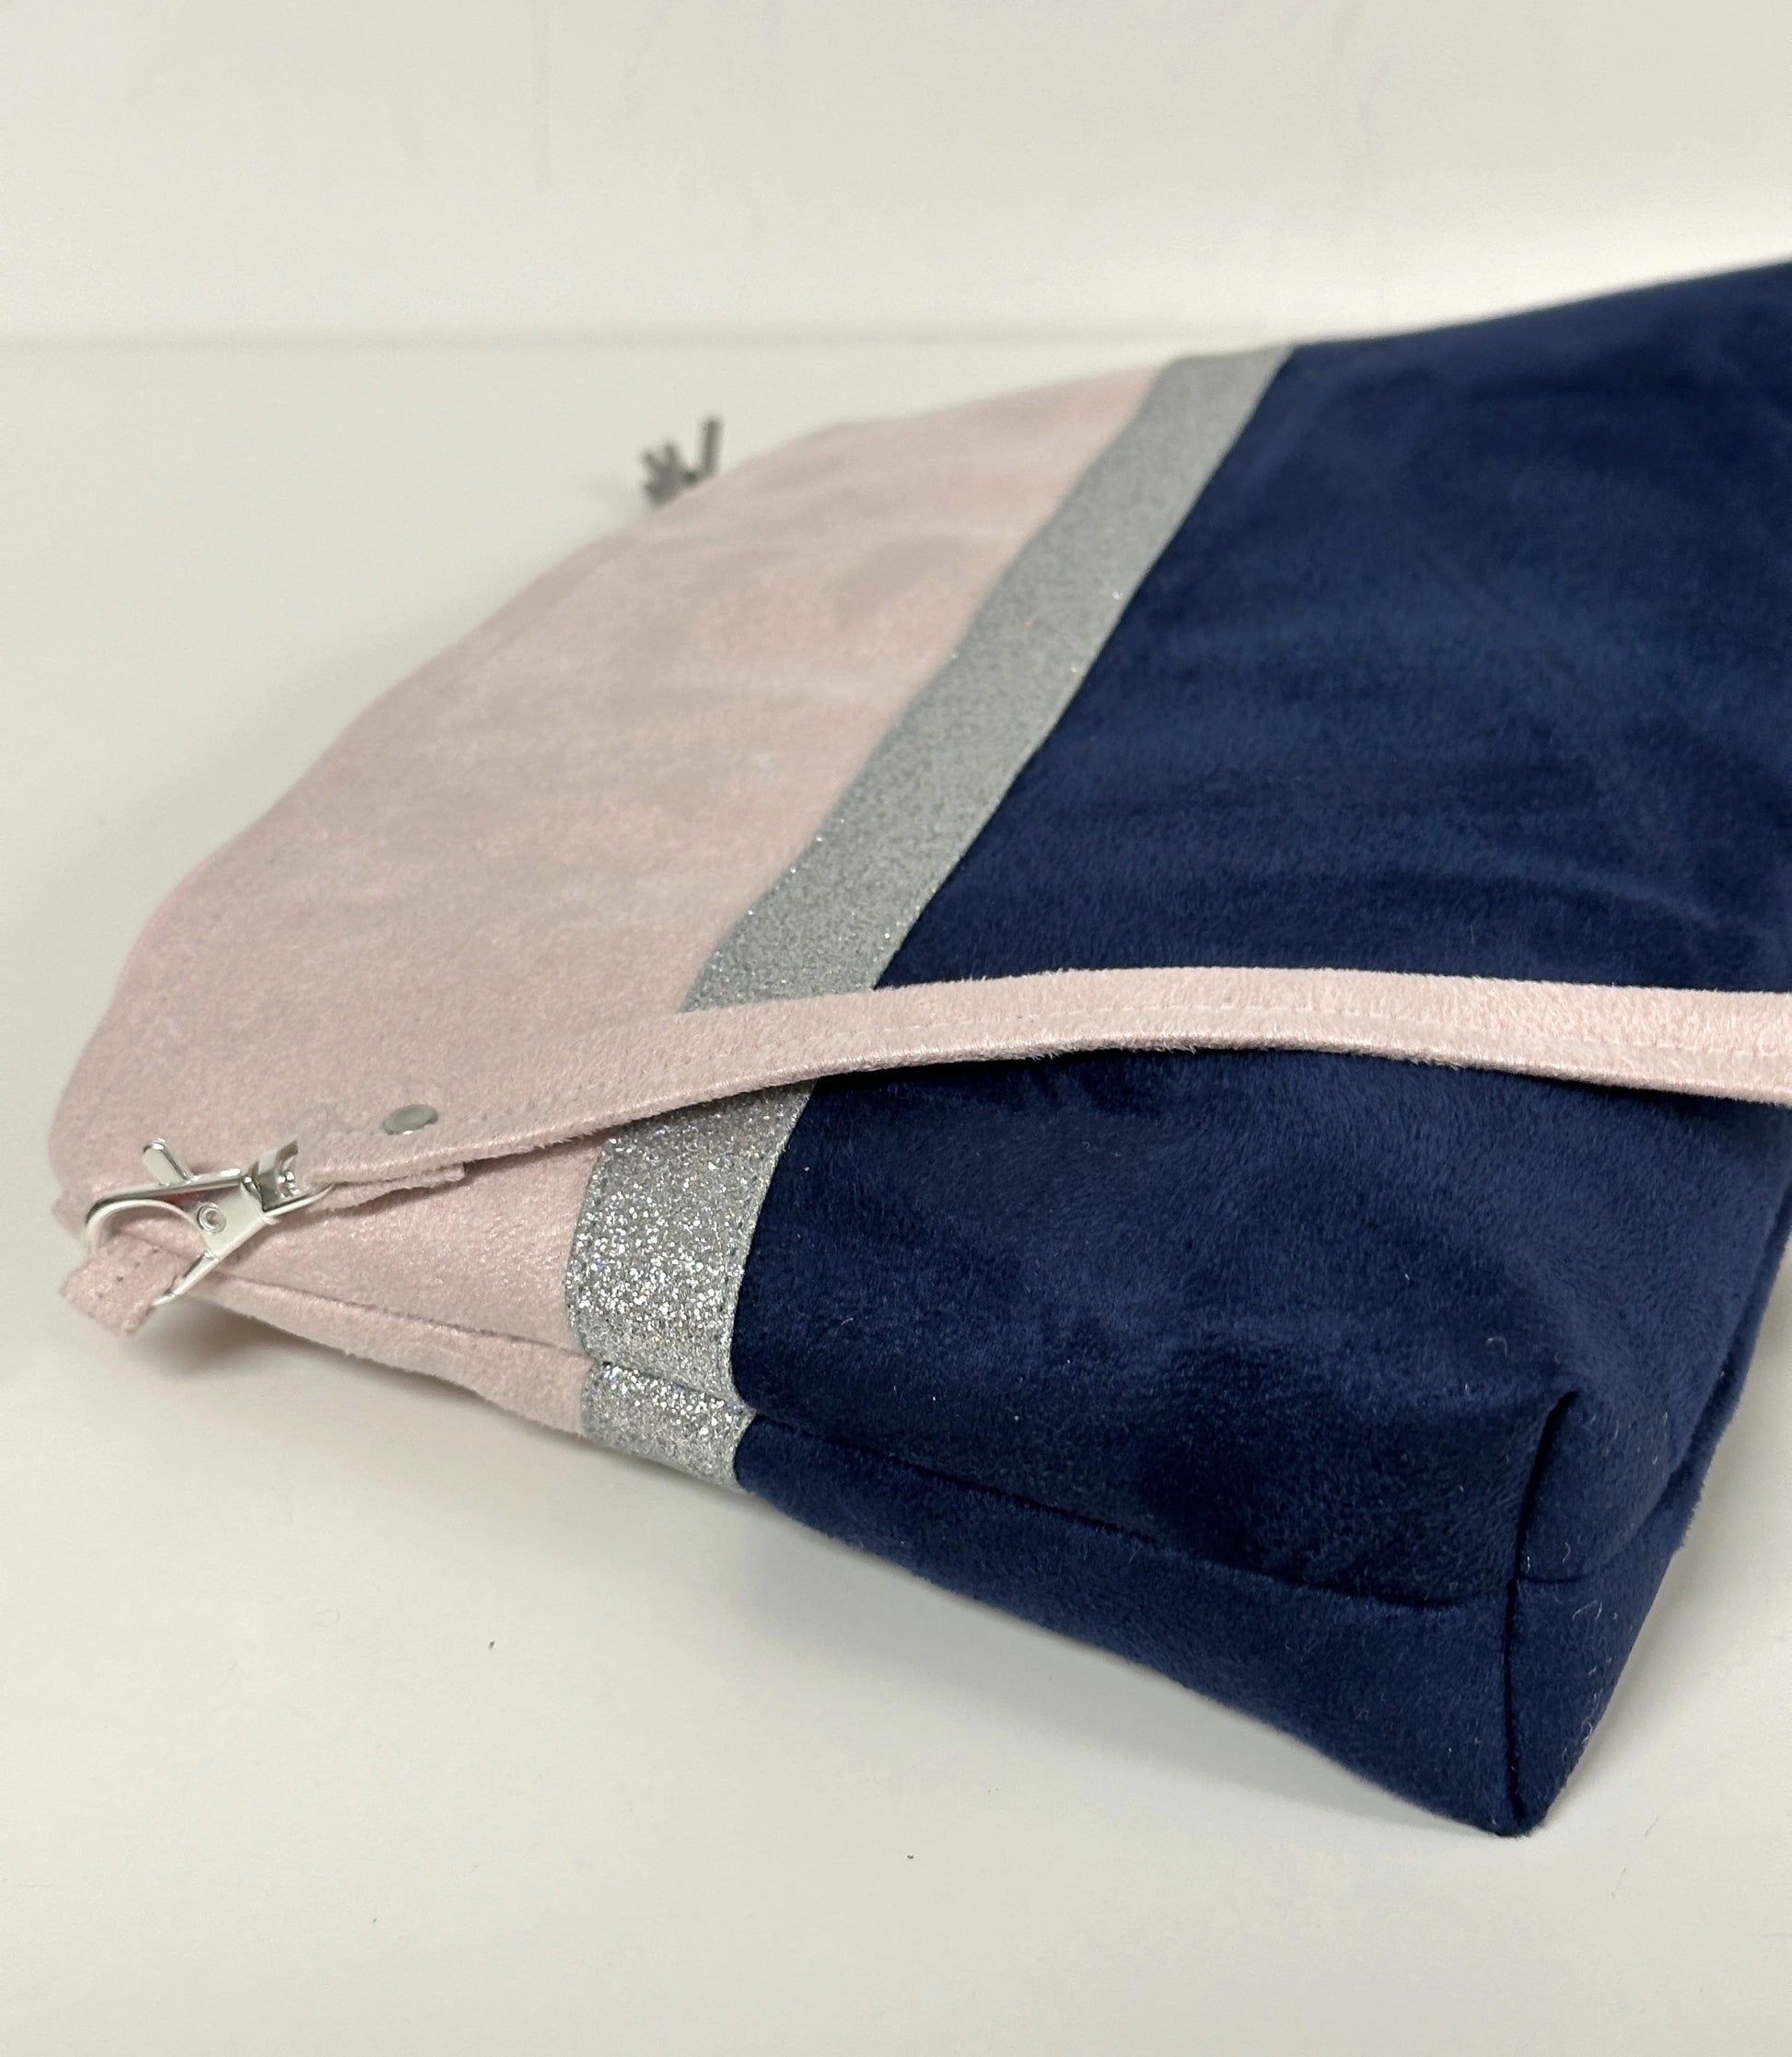 Vue latérale du  sac bandoulière rose pâle et bleu marine à paillettes argentées.